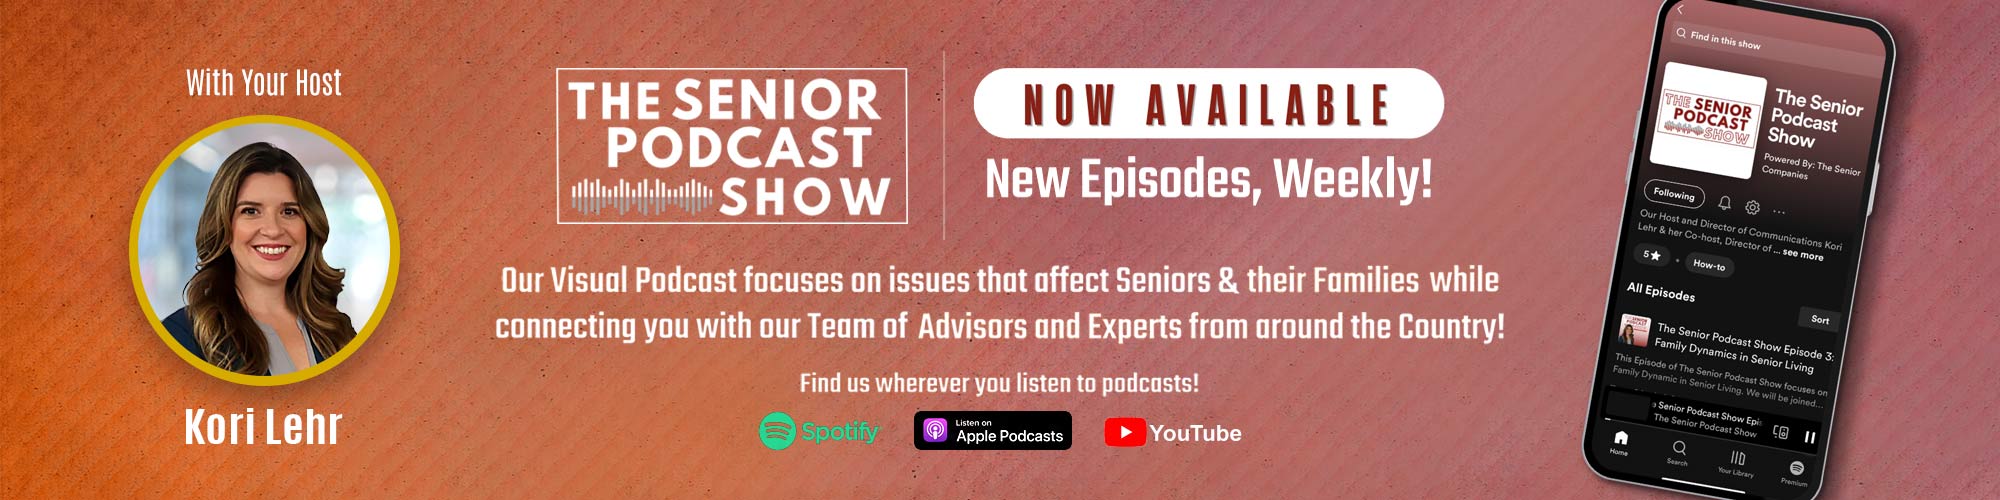 The Senior Podcast Show